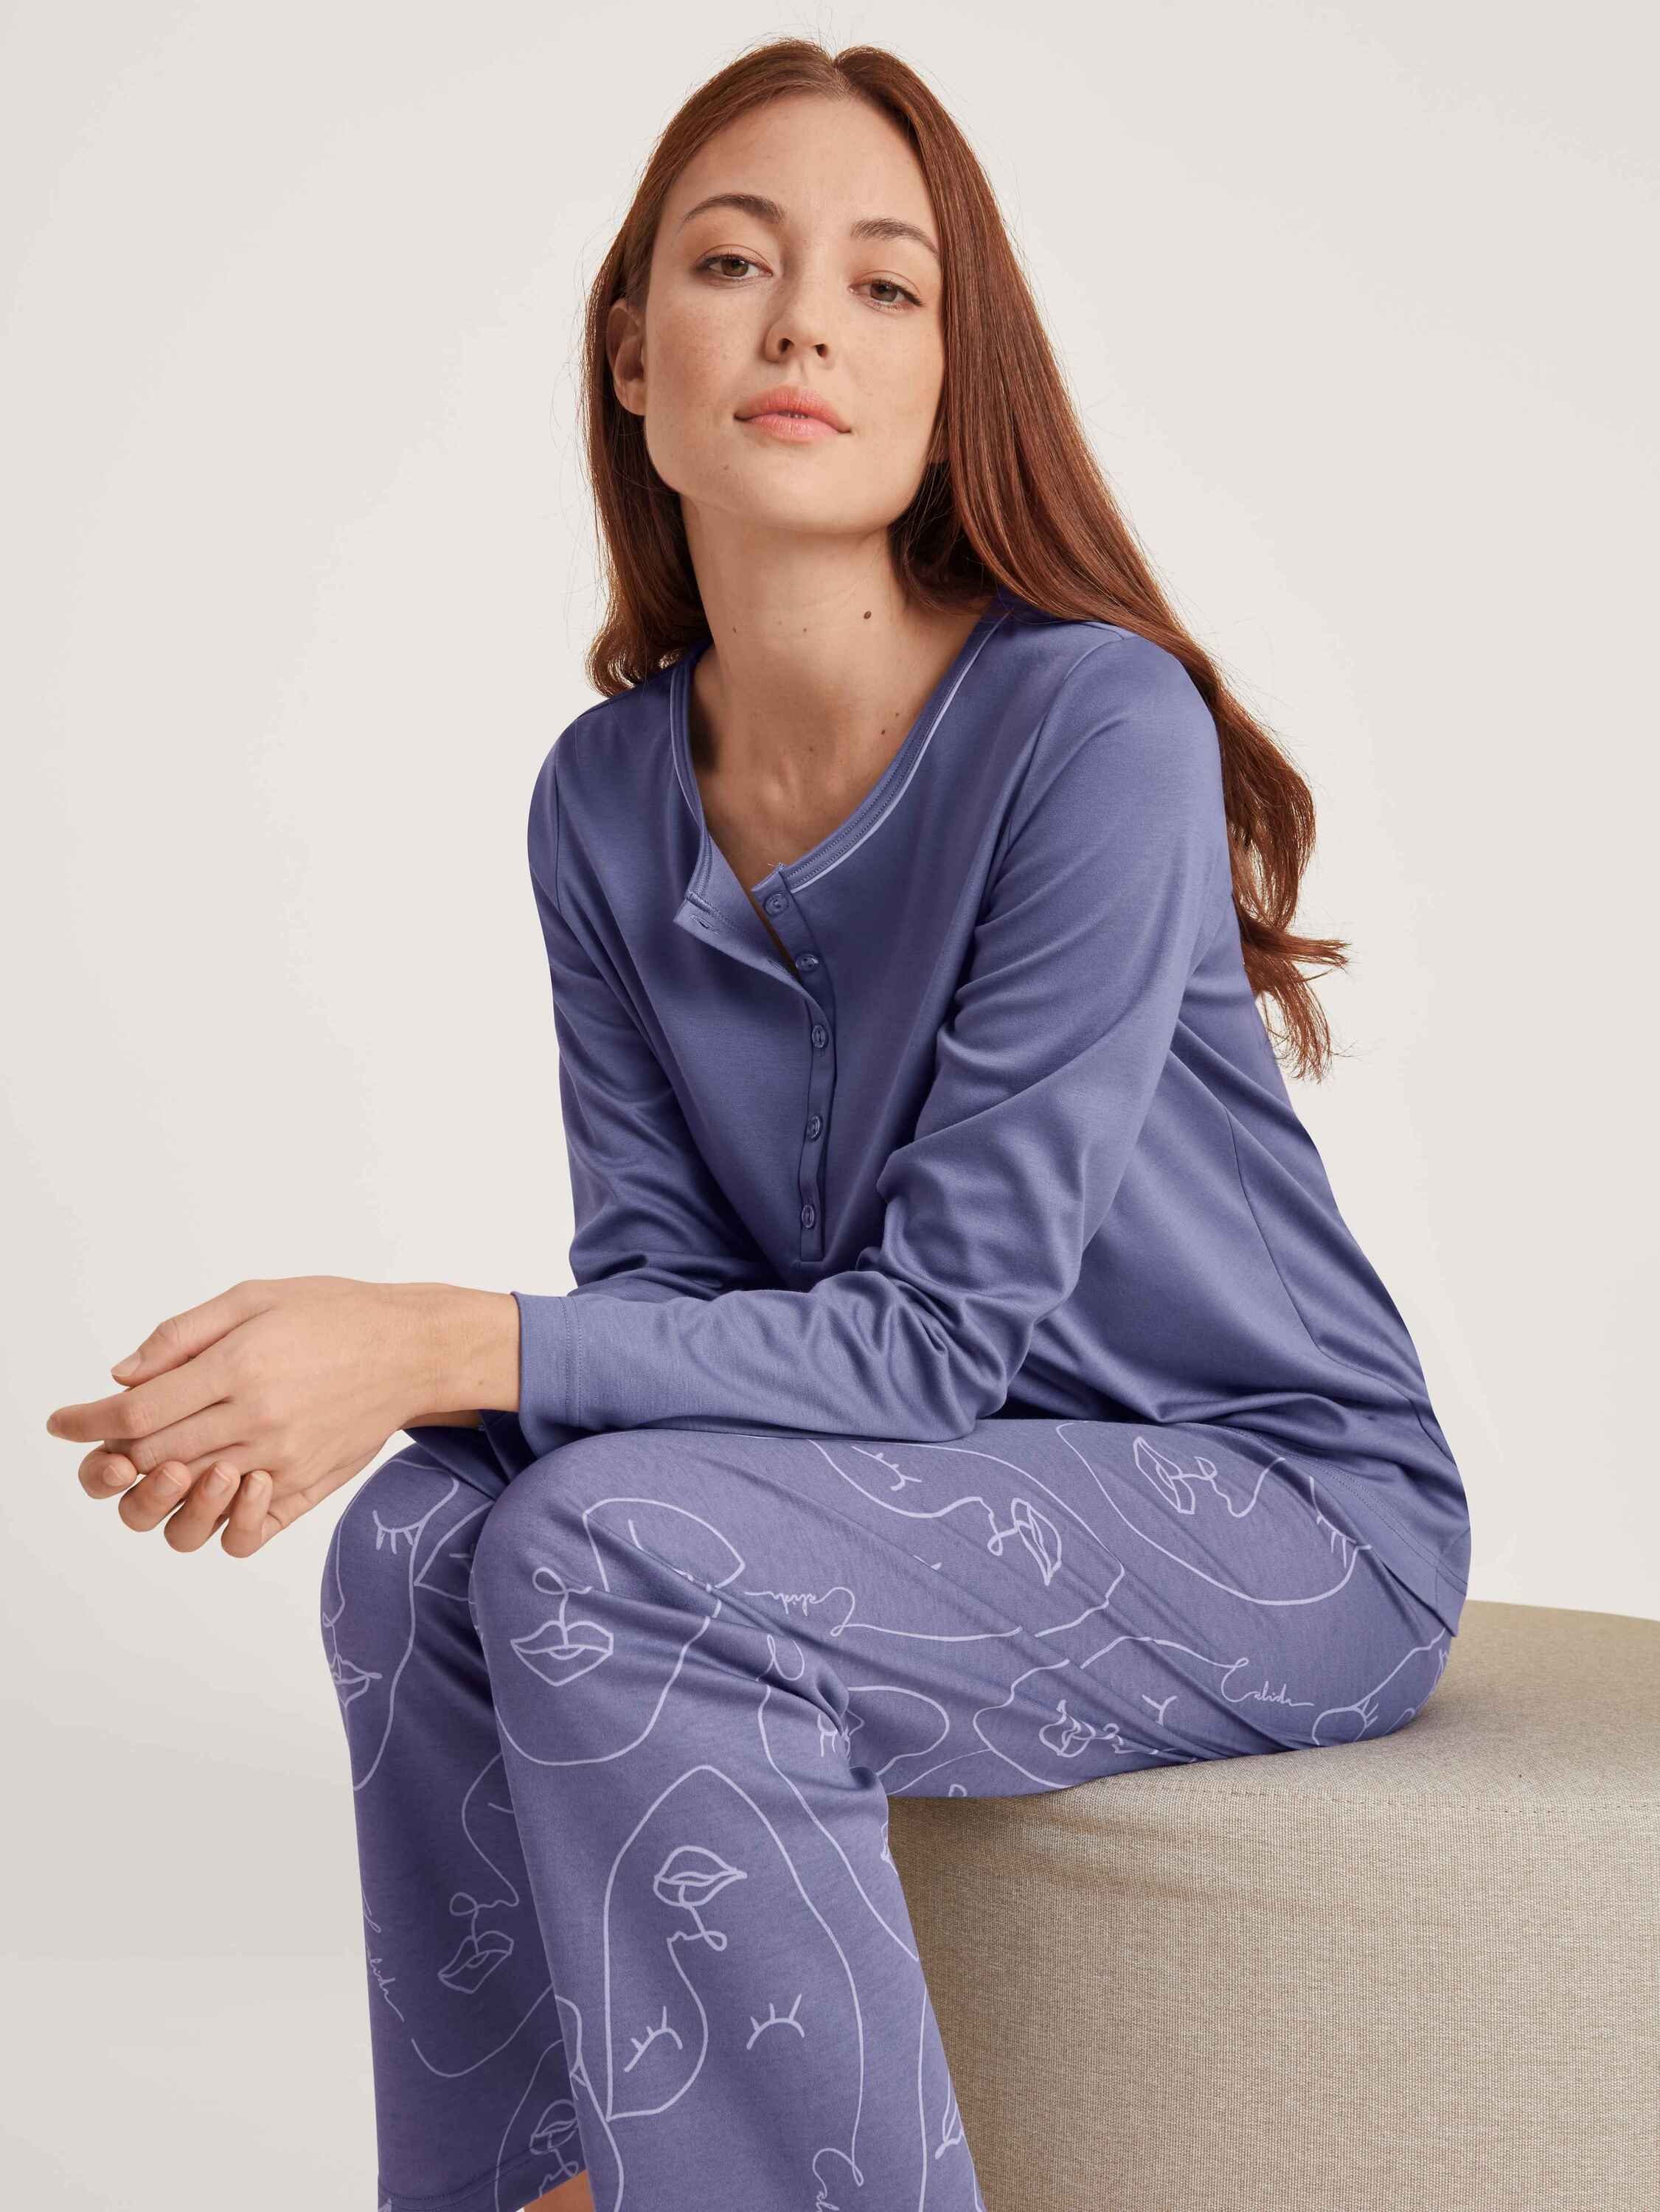 Pyjama twilight tlg) lang purple Pyjama, CALIDA (2